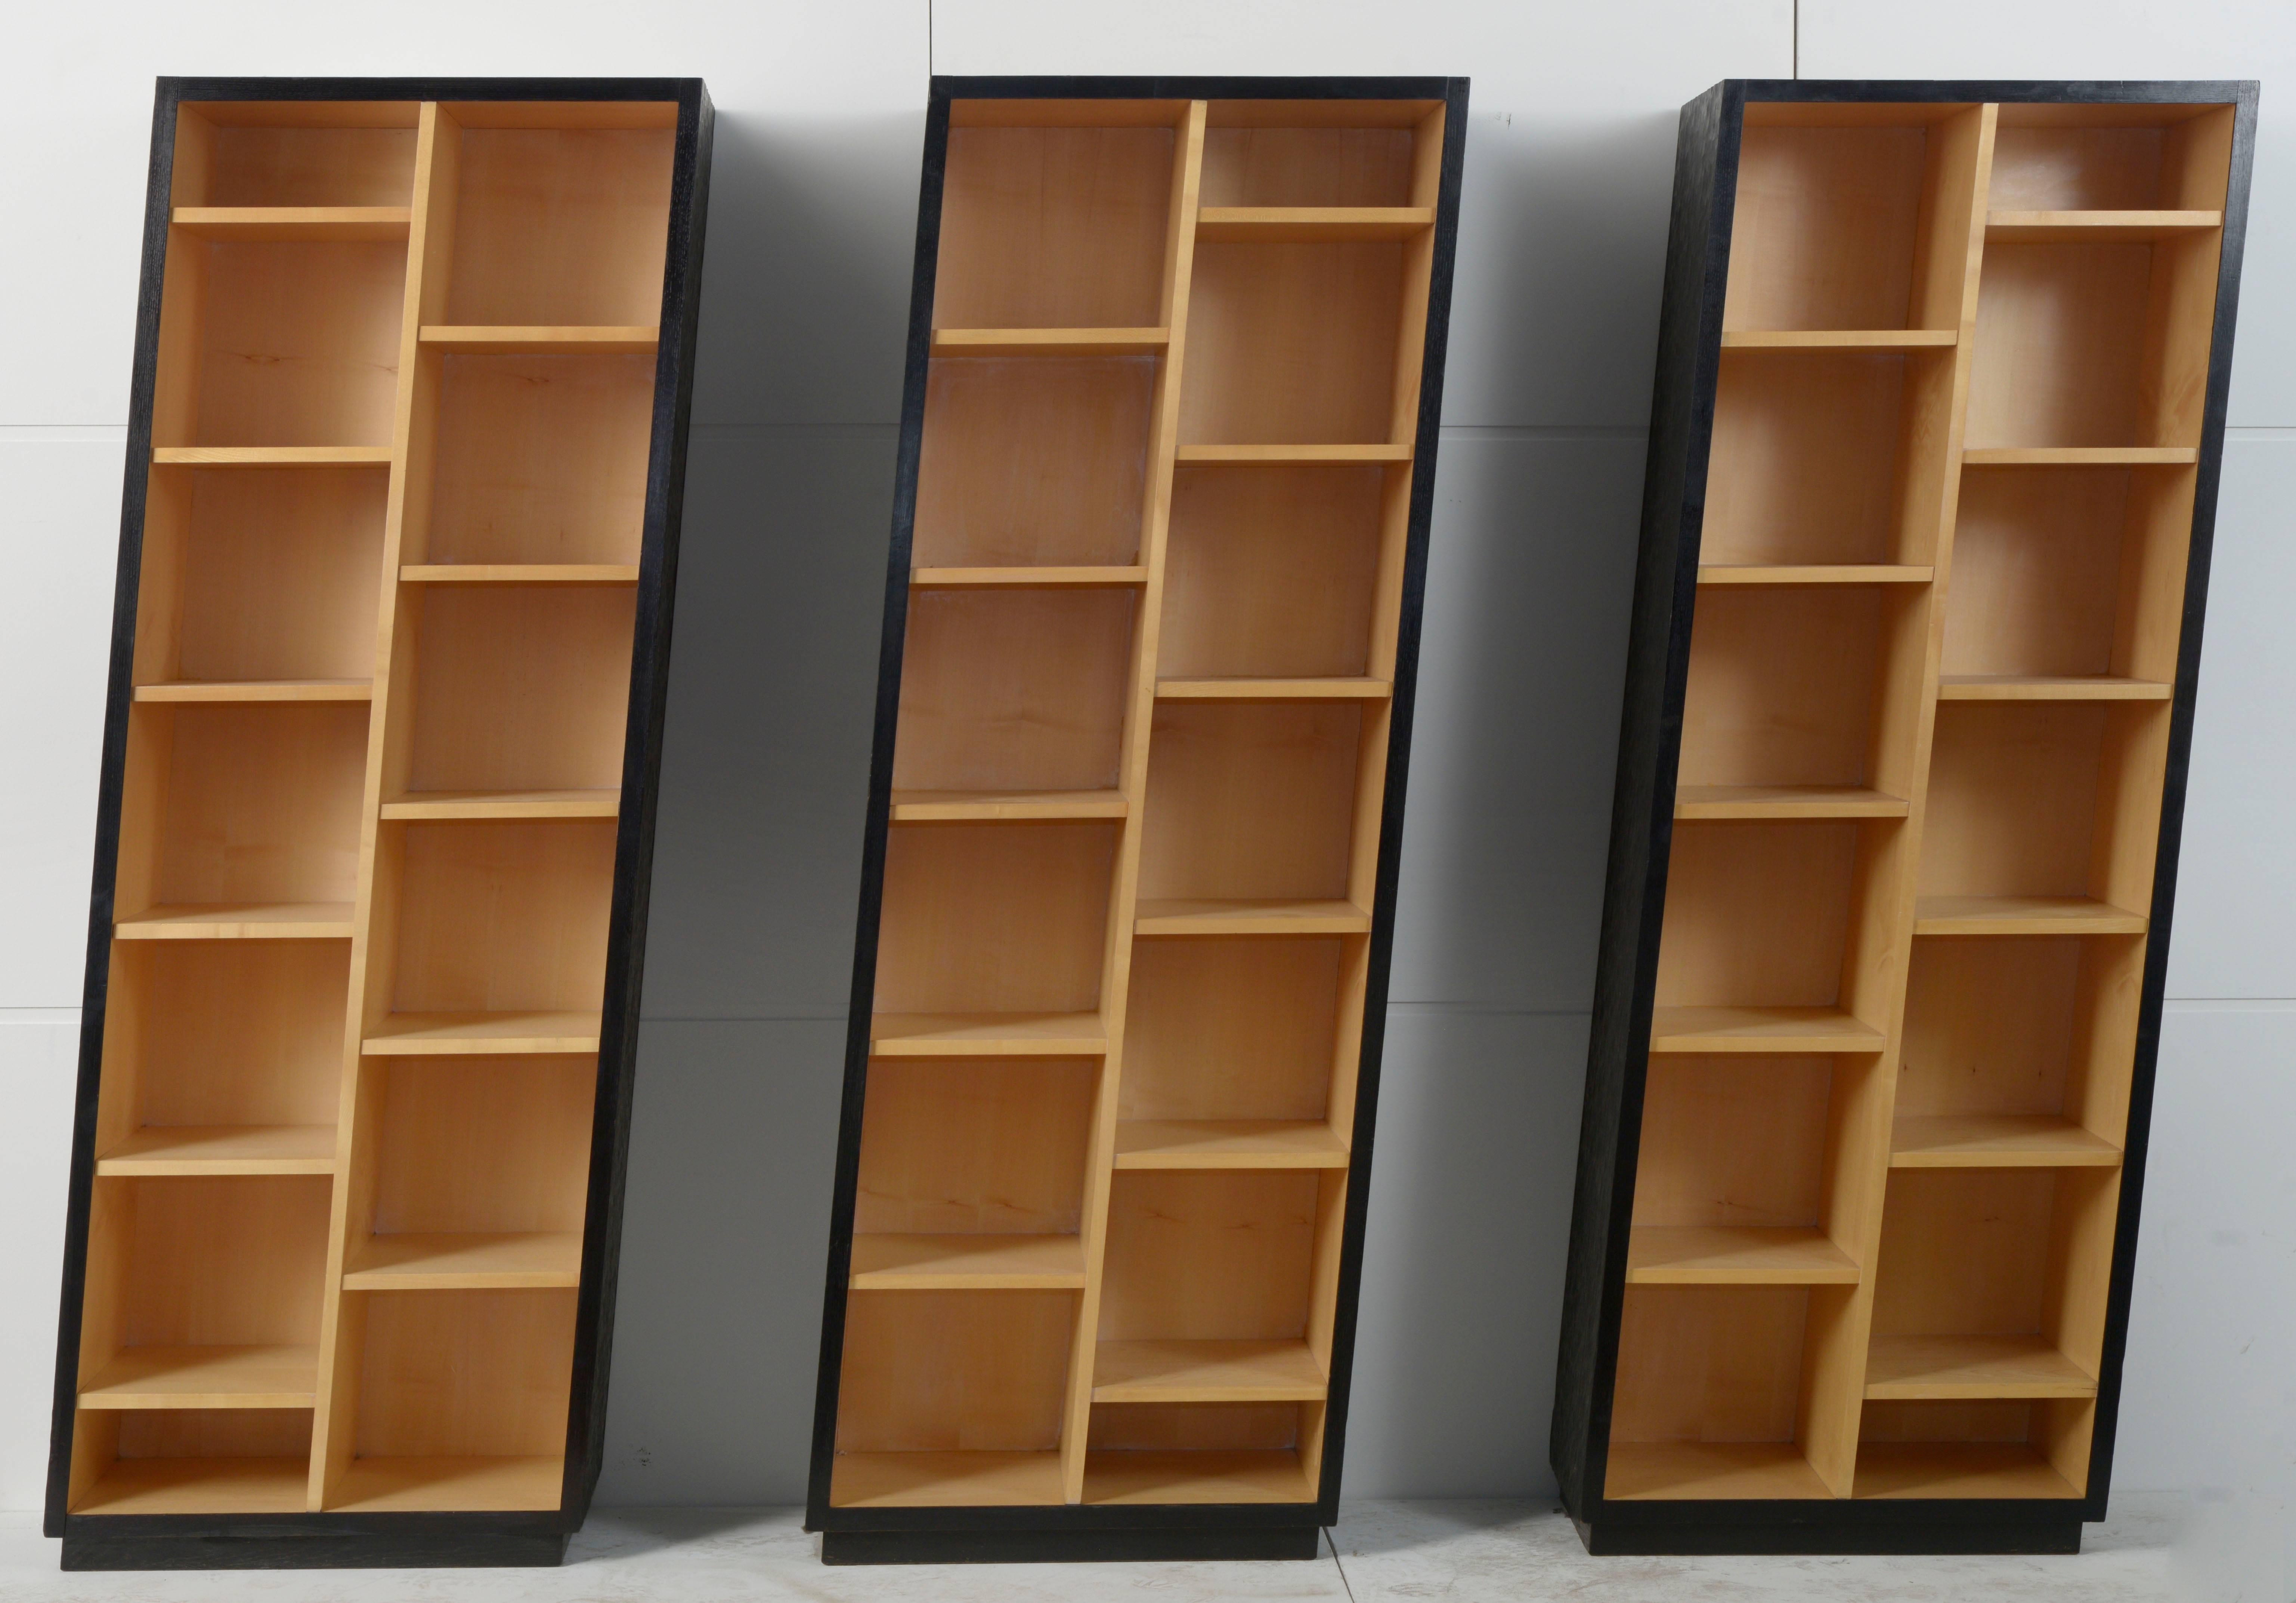 Set of three Christian de Portzamparc asymmetric bookcases.
Gouge planed oak
Maple
Measure: Each element 195 cm high by 70 cm wide and 40 cm deep.